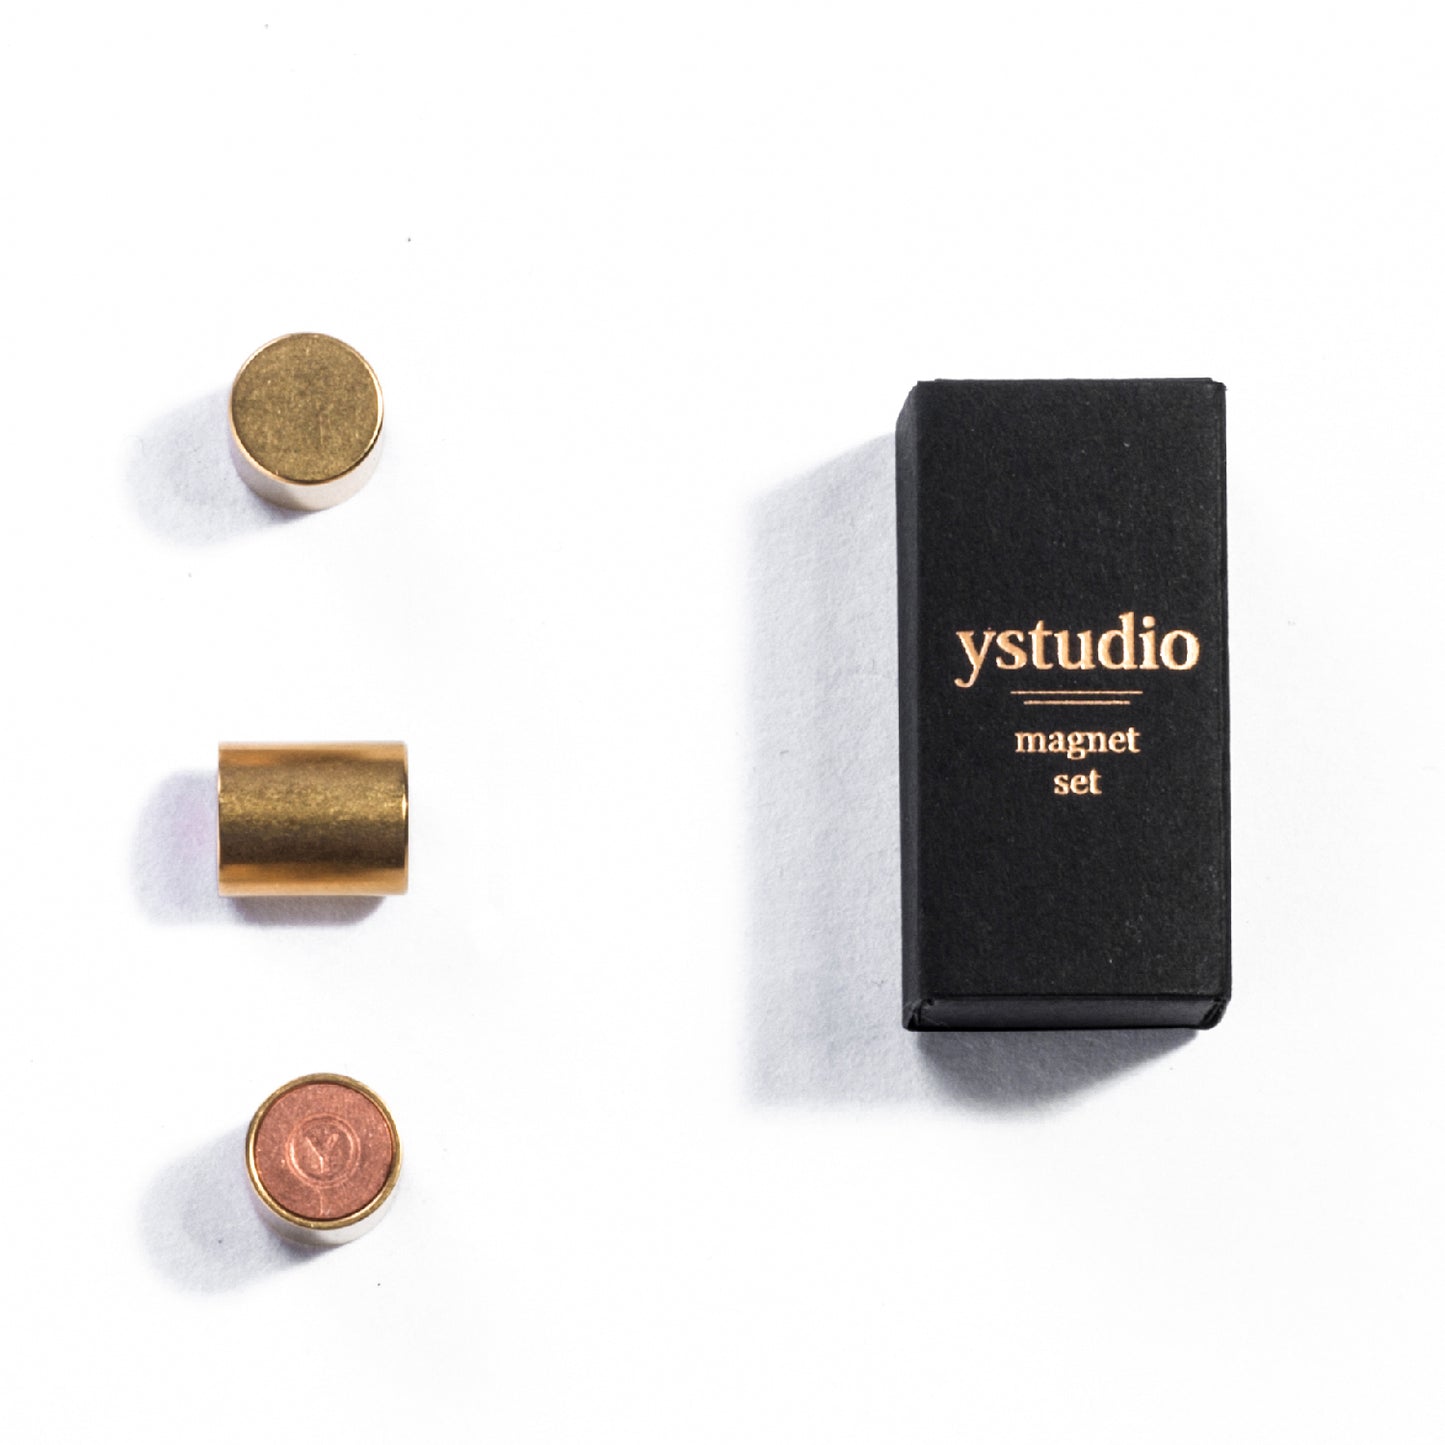 Ystudio Classic Magnet Set